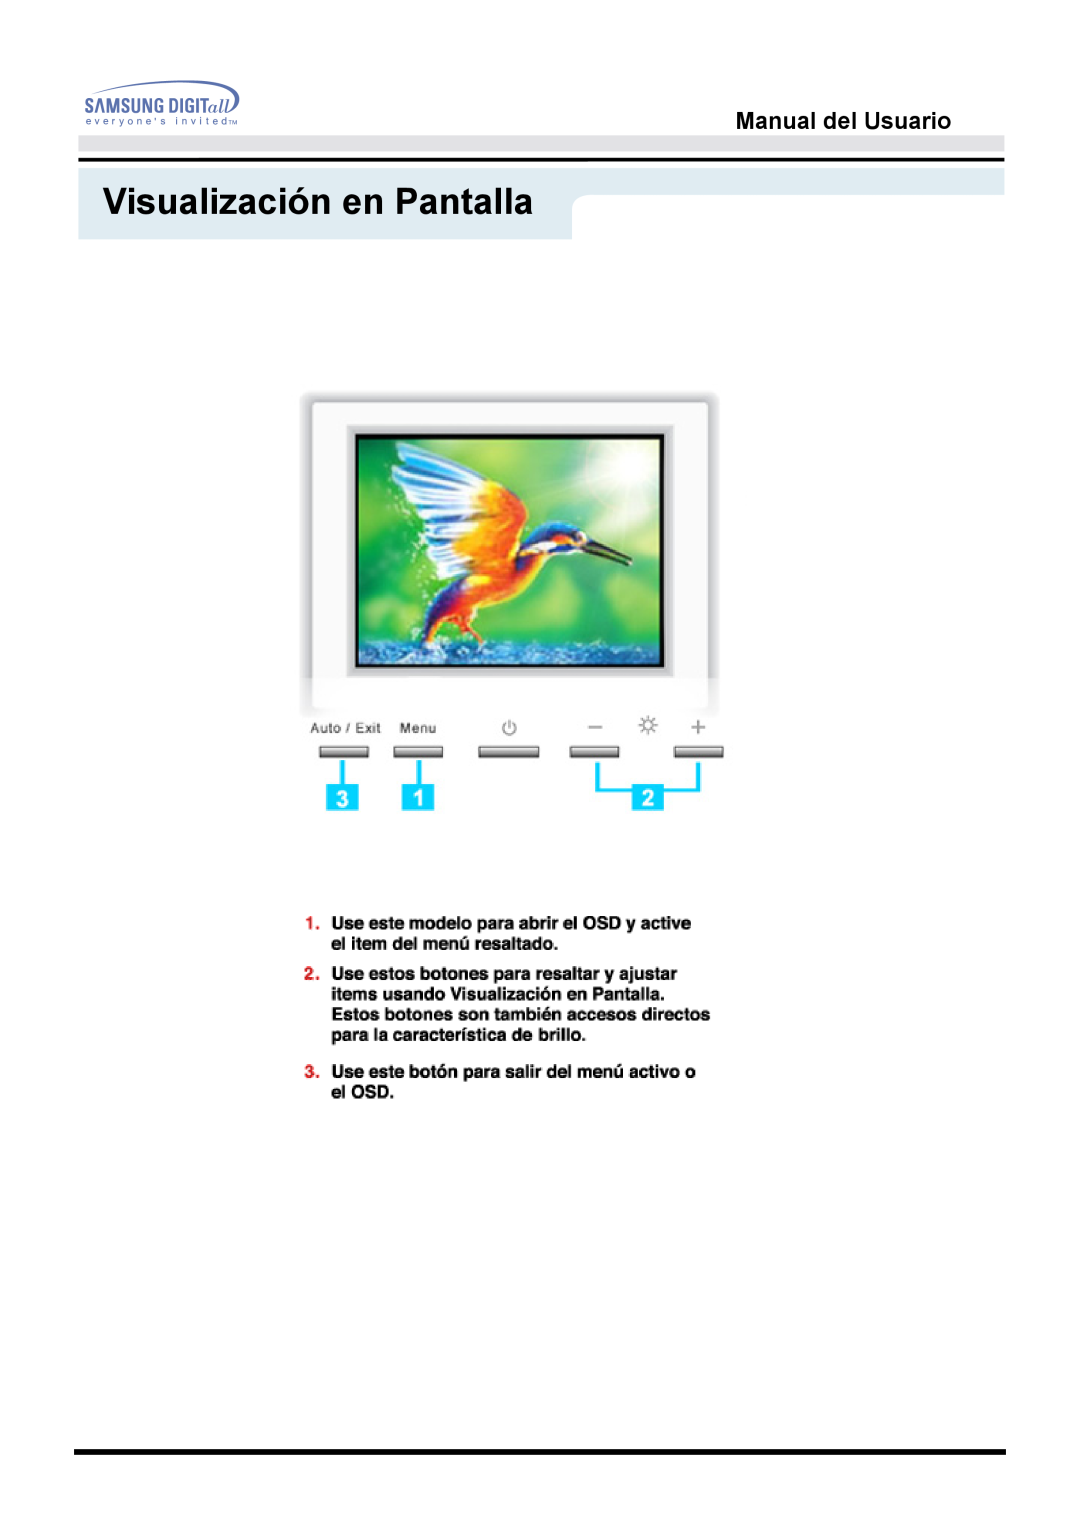 Samsung 153S manual Visualización en Pantalla, Manual del Usuario 